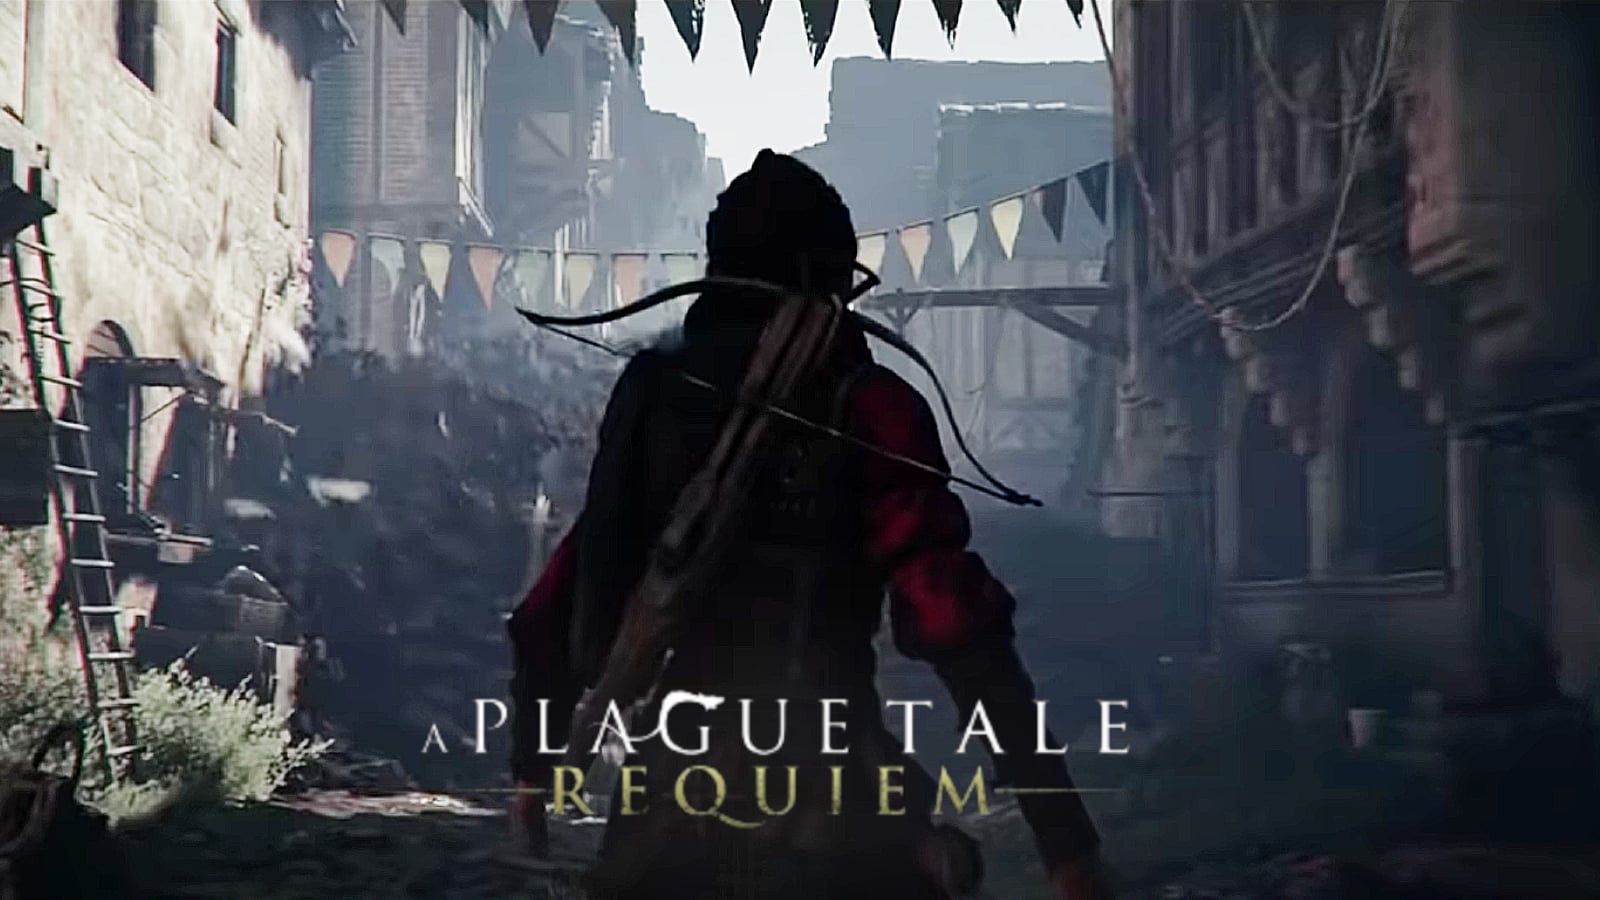 How long is A Plague Tale: Requiem?